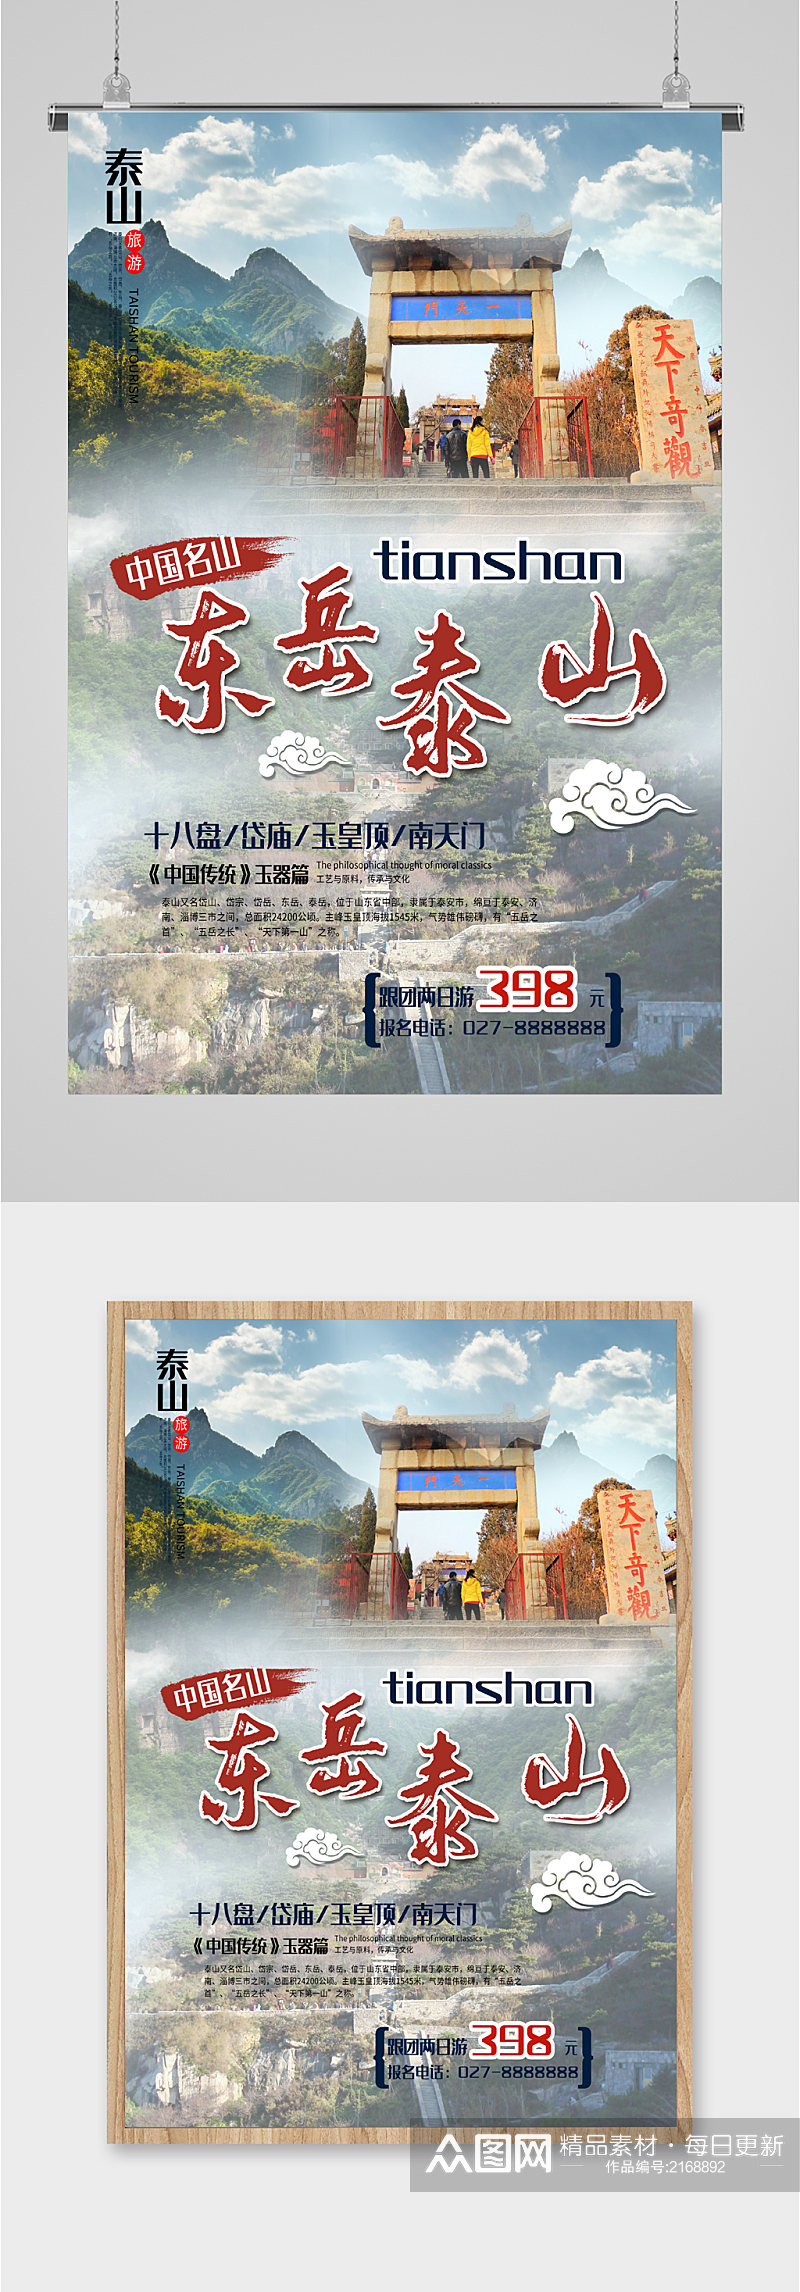 东岳泰山旅游海报素材